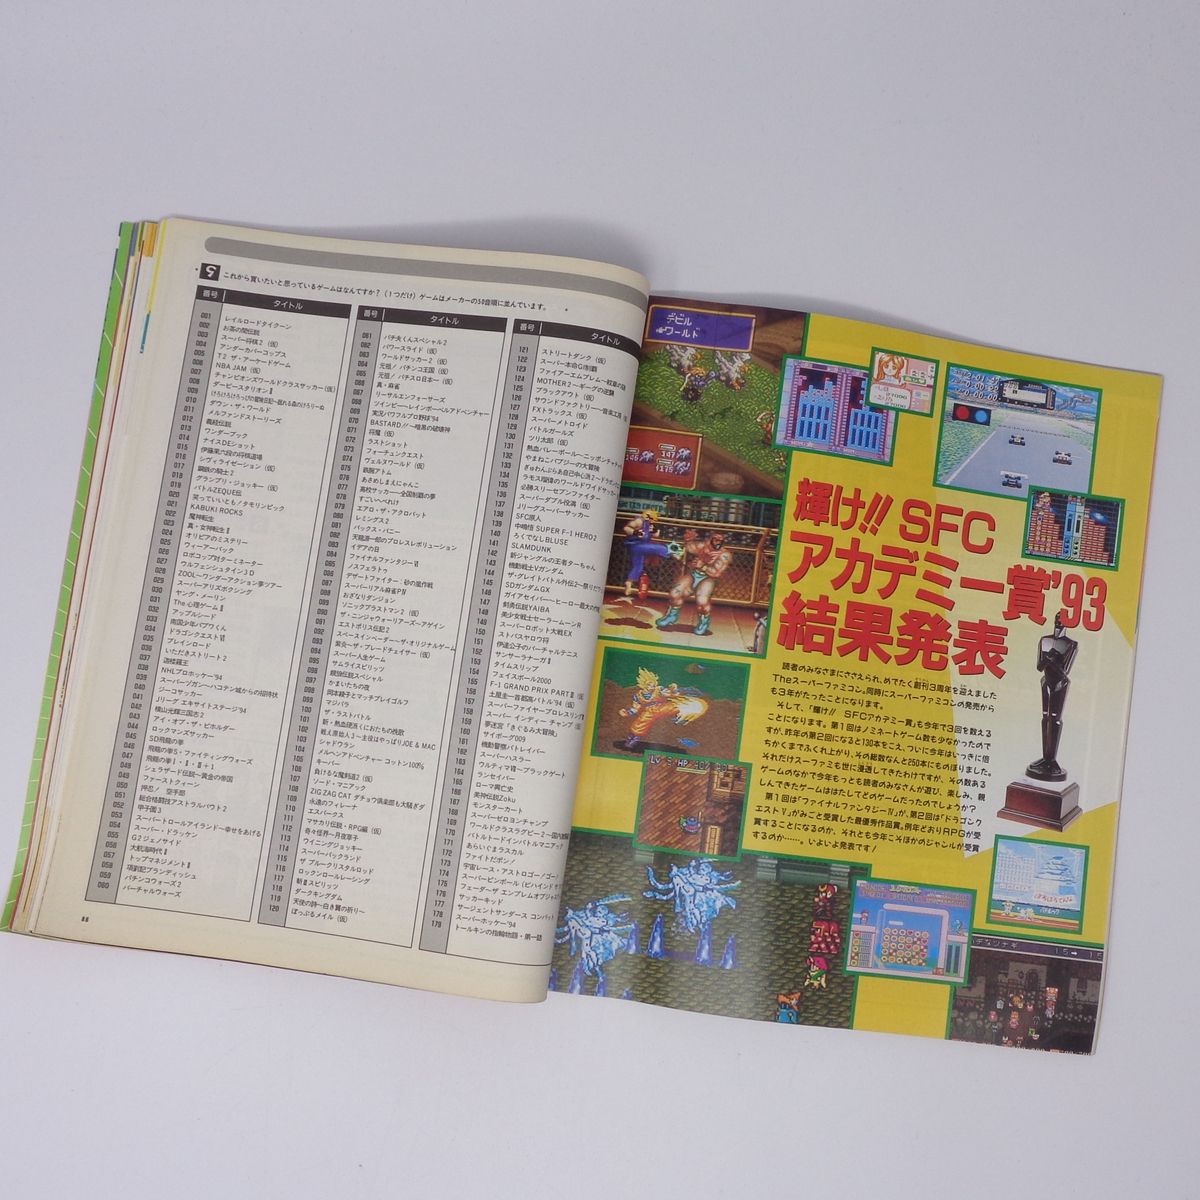 【曲がりあり】The SuperFamicom 1994年1月7・21日号 NO.1 別冊付録無し /ロックマンX//Theスーパーファミコン/ゲーム雑誌[Free Shipping]_画像7